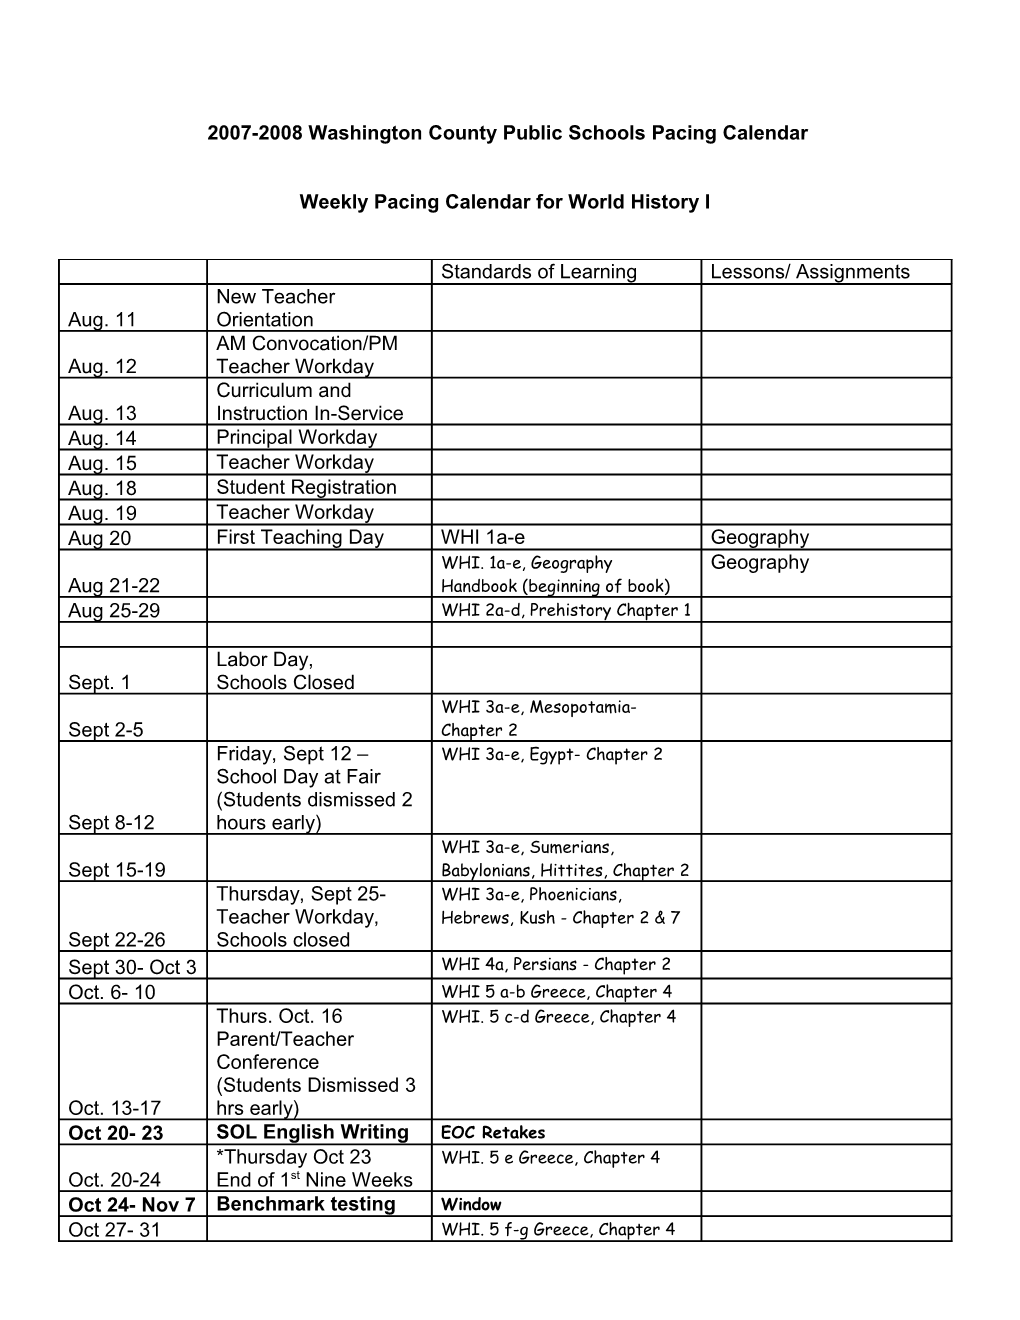 2006-2007 Washington County Public Schools Pacing Calendar s1